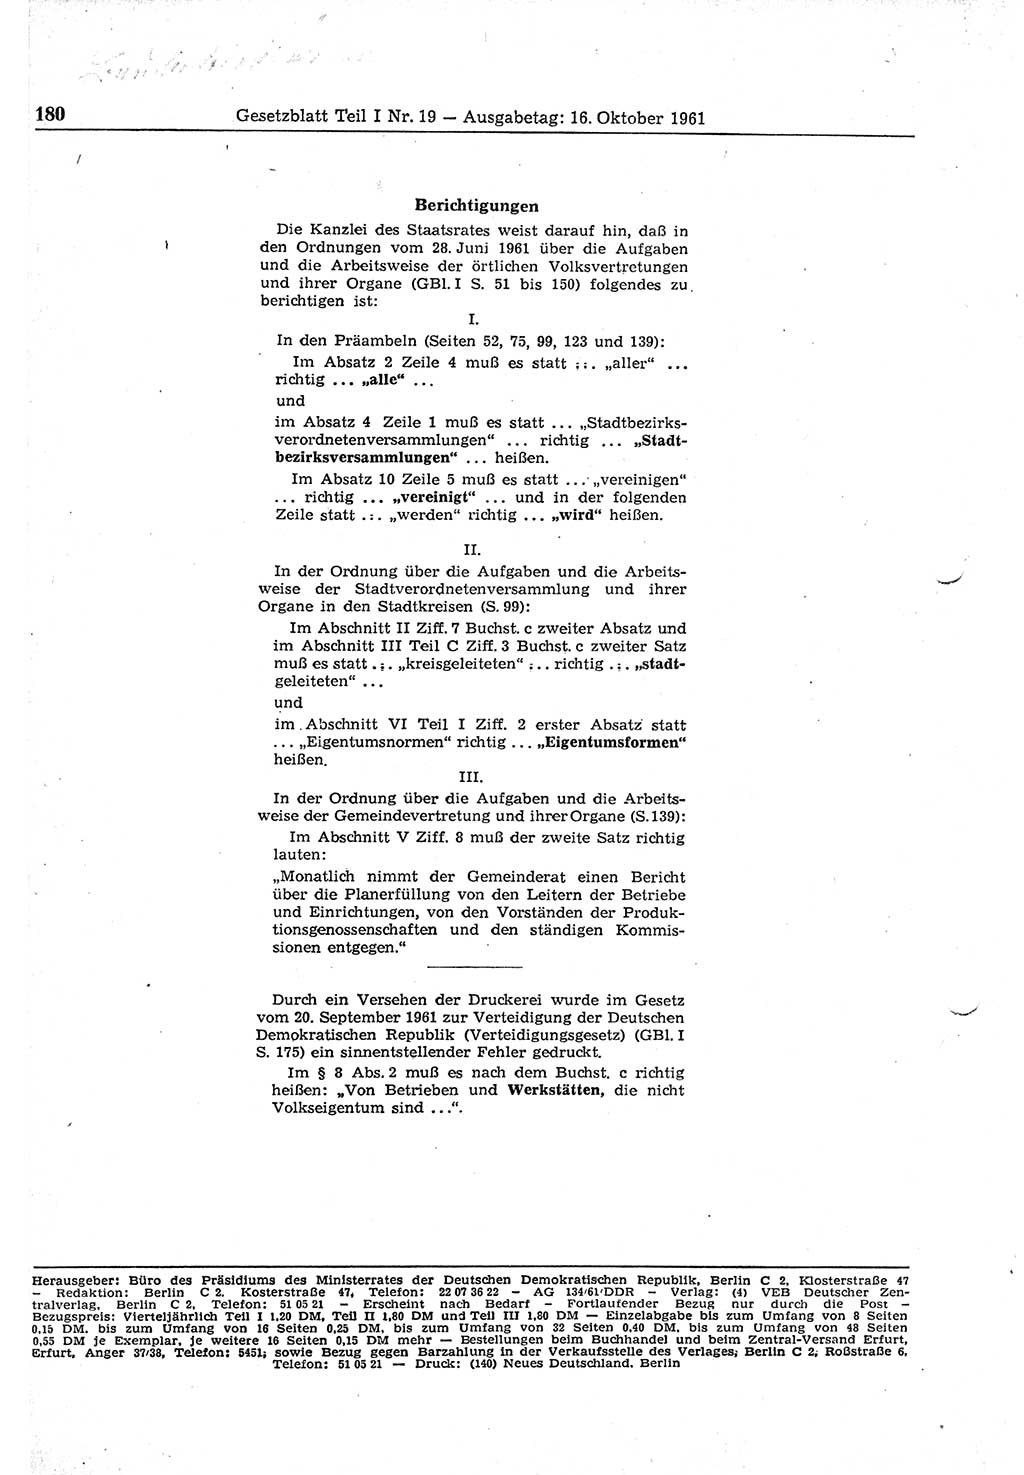 Gesetzblatt (GBl.) der Deutschen Demokratischen Republik (DDR) Teil Ⅰ 1961, Seite 180 (GBl. DDR Ⅰ 1961, S. 180)